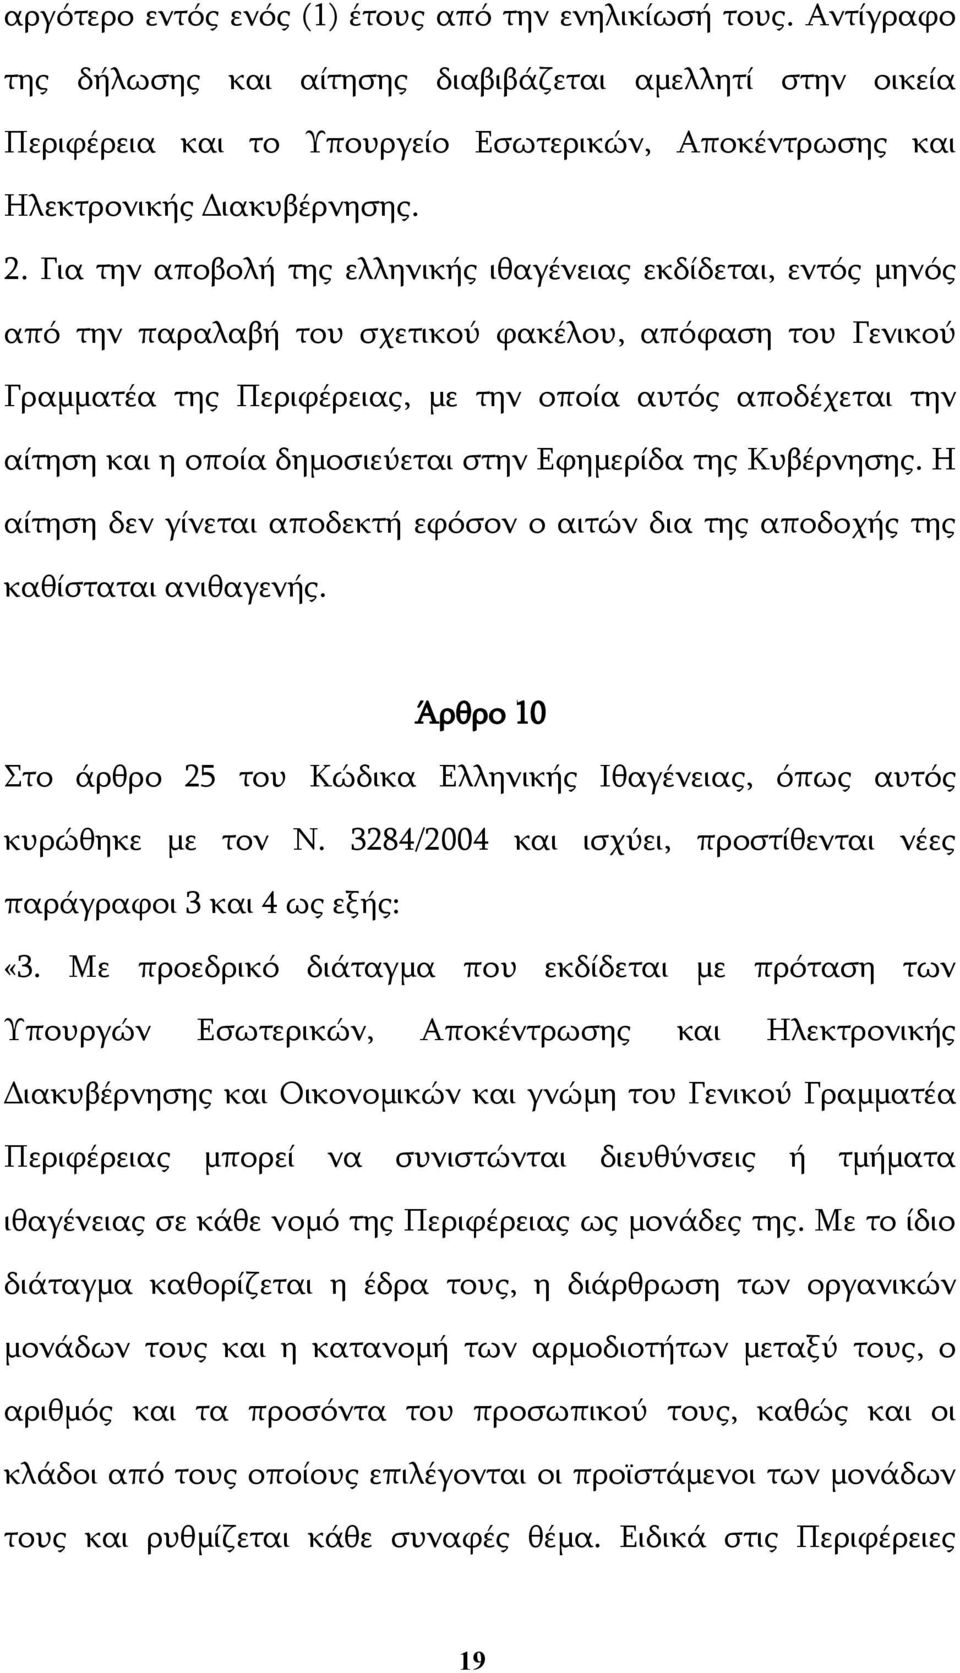 Για την αποβολή της ελληνικής ιθαγένειας εκδίδεται, εντός μηνός από την παραλαβή του σχετικού φακέλου, απόφαση του Γενικού Γραμματέα της Περιφέρειας, με την οποία αυτός αποδέχεται την αίτηση και η